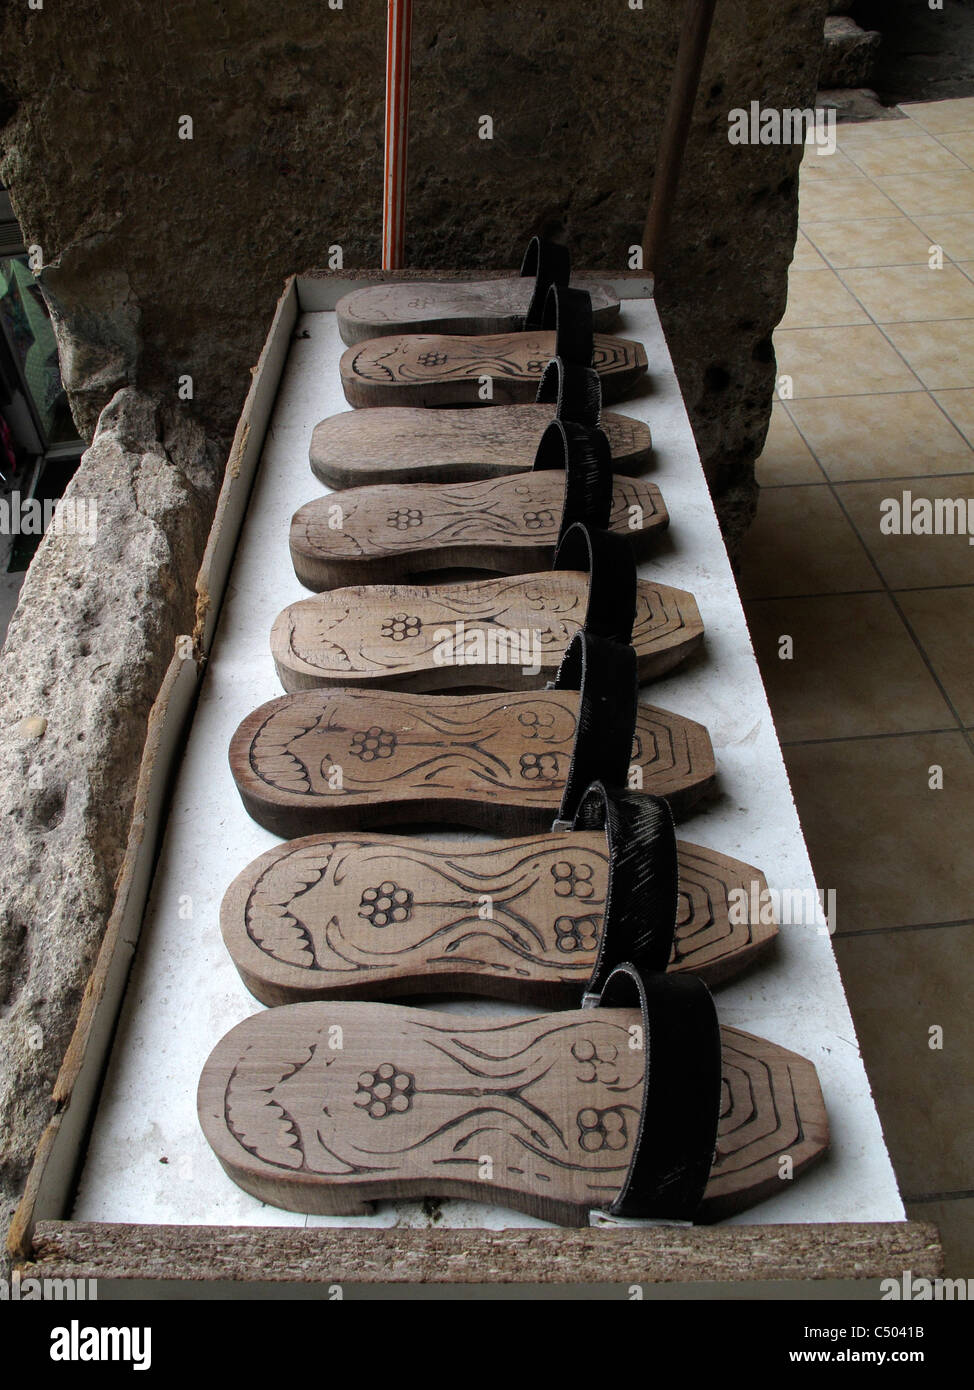 La Turchia di Sultanahmet Istanbul old town scarpe di legno per wc Foto Stock